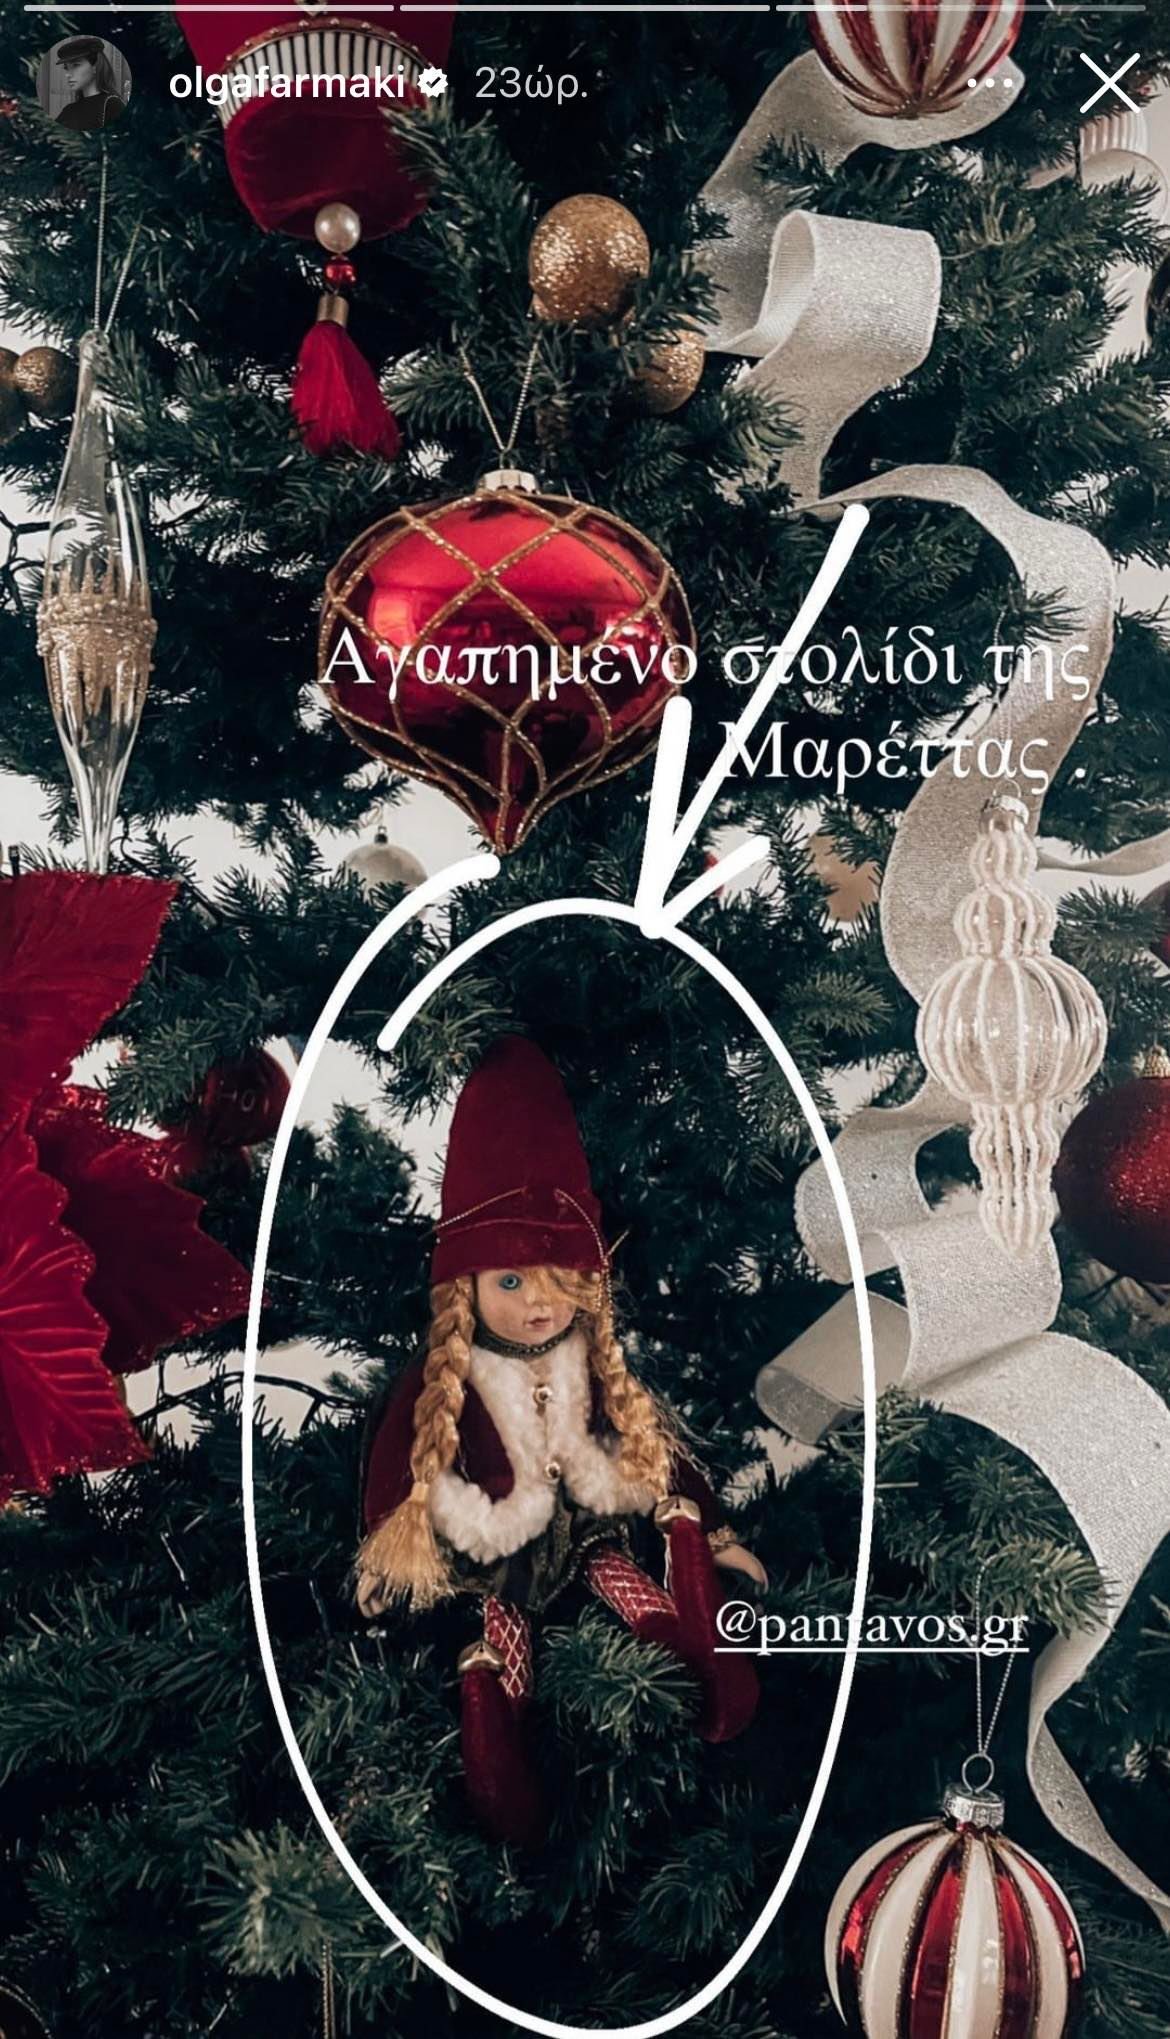 Όλγα Φαρμάκη: Δείτε το χριστουγεννιάτικο δέντρο που κοσμεί το σαλόνι της αλλά και το αγαπημένο στολίδι της κόρη της